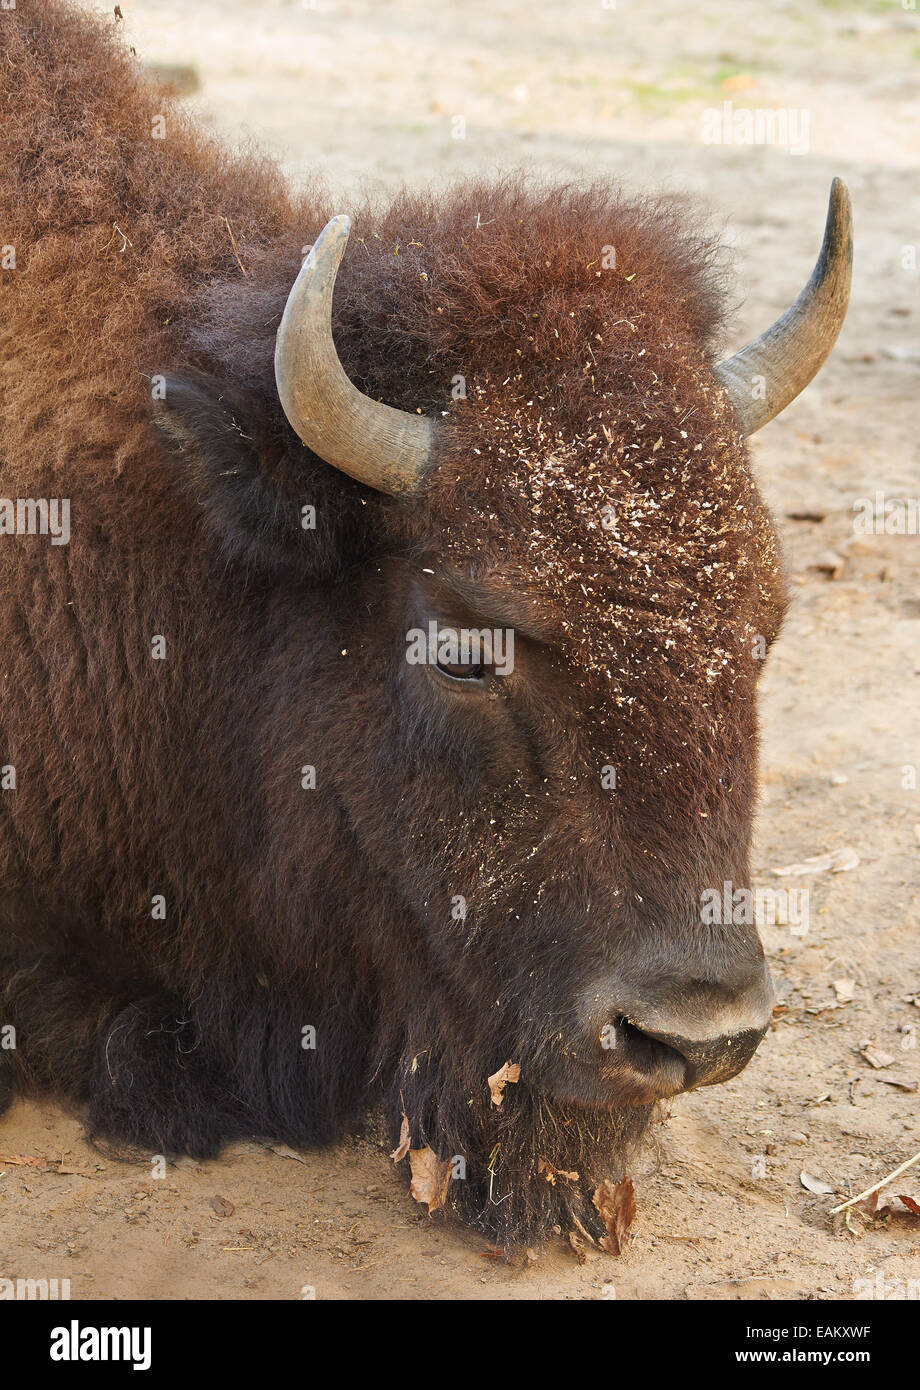 Chef de big brown pose de bison sur le sable Banque D'Images